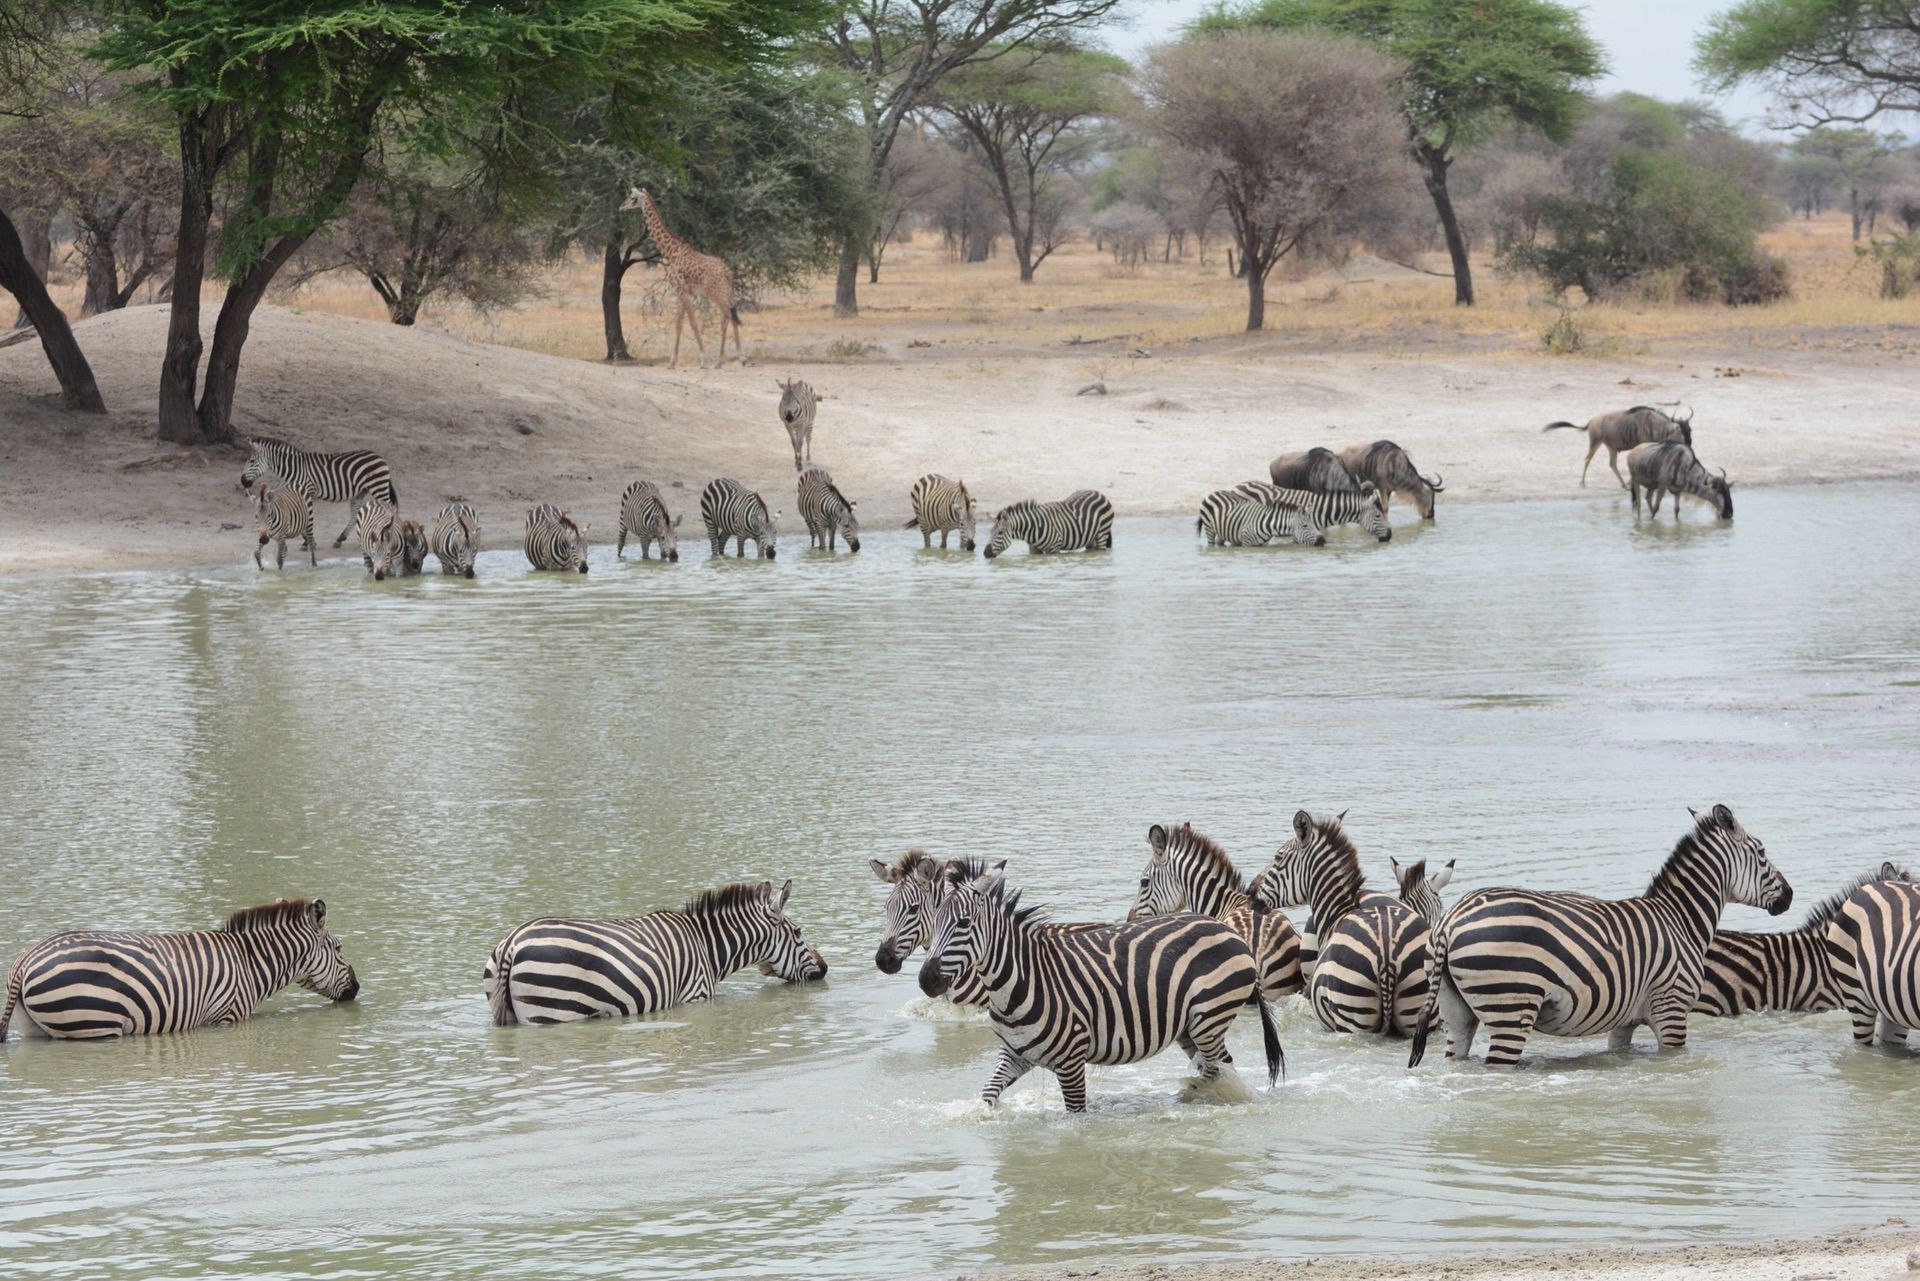 塔兰吉雷国家公园是坦桑尼亚一处非常著名的野生动物保护区。这里有茂密的森林和沼泽，生活着数以千计的动物